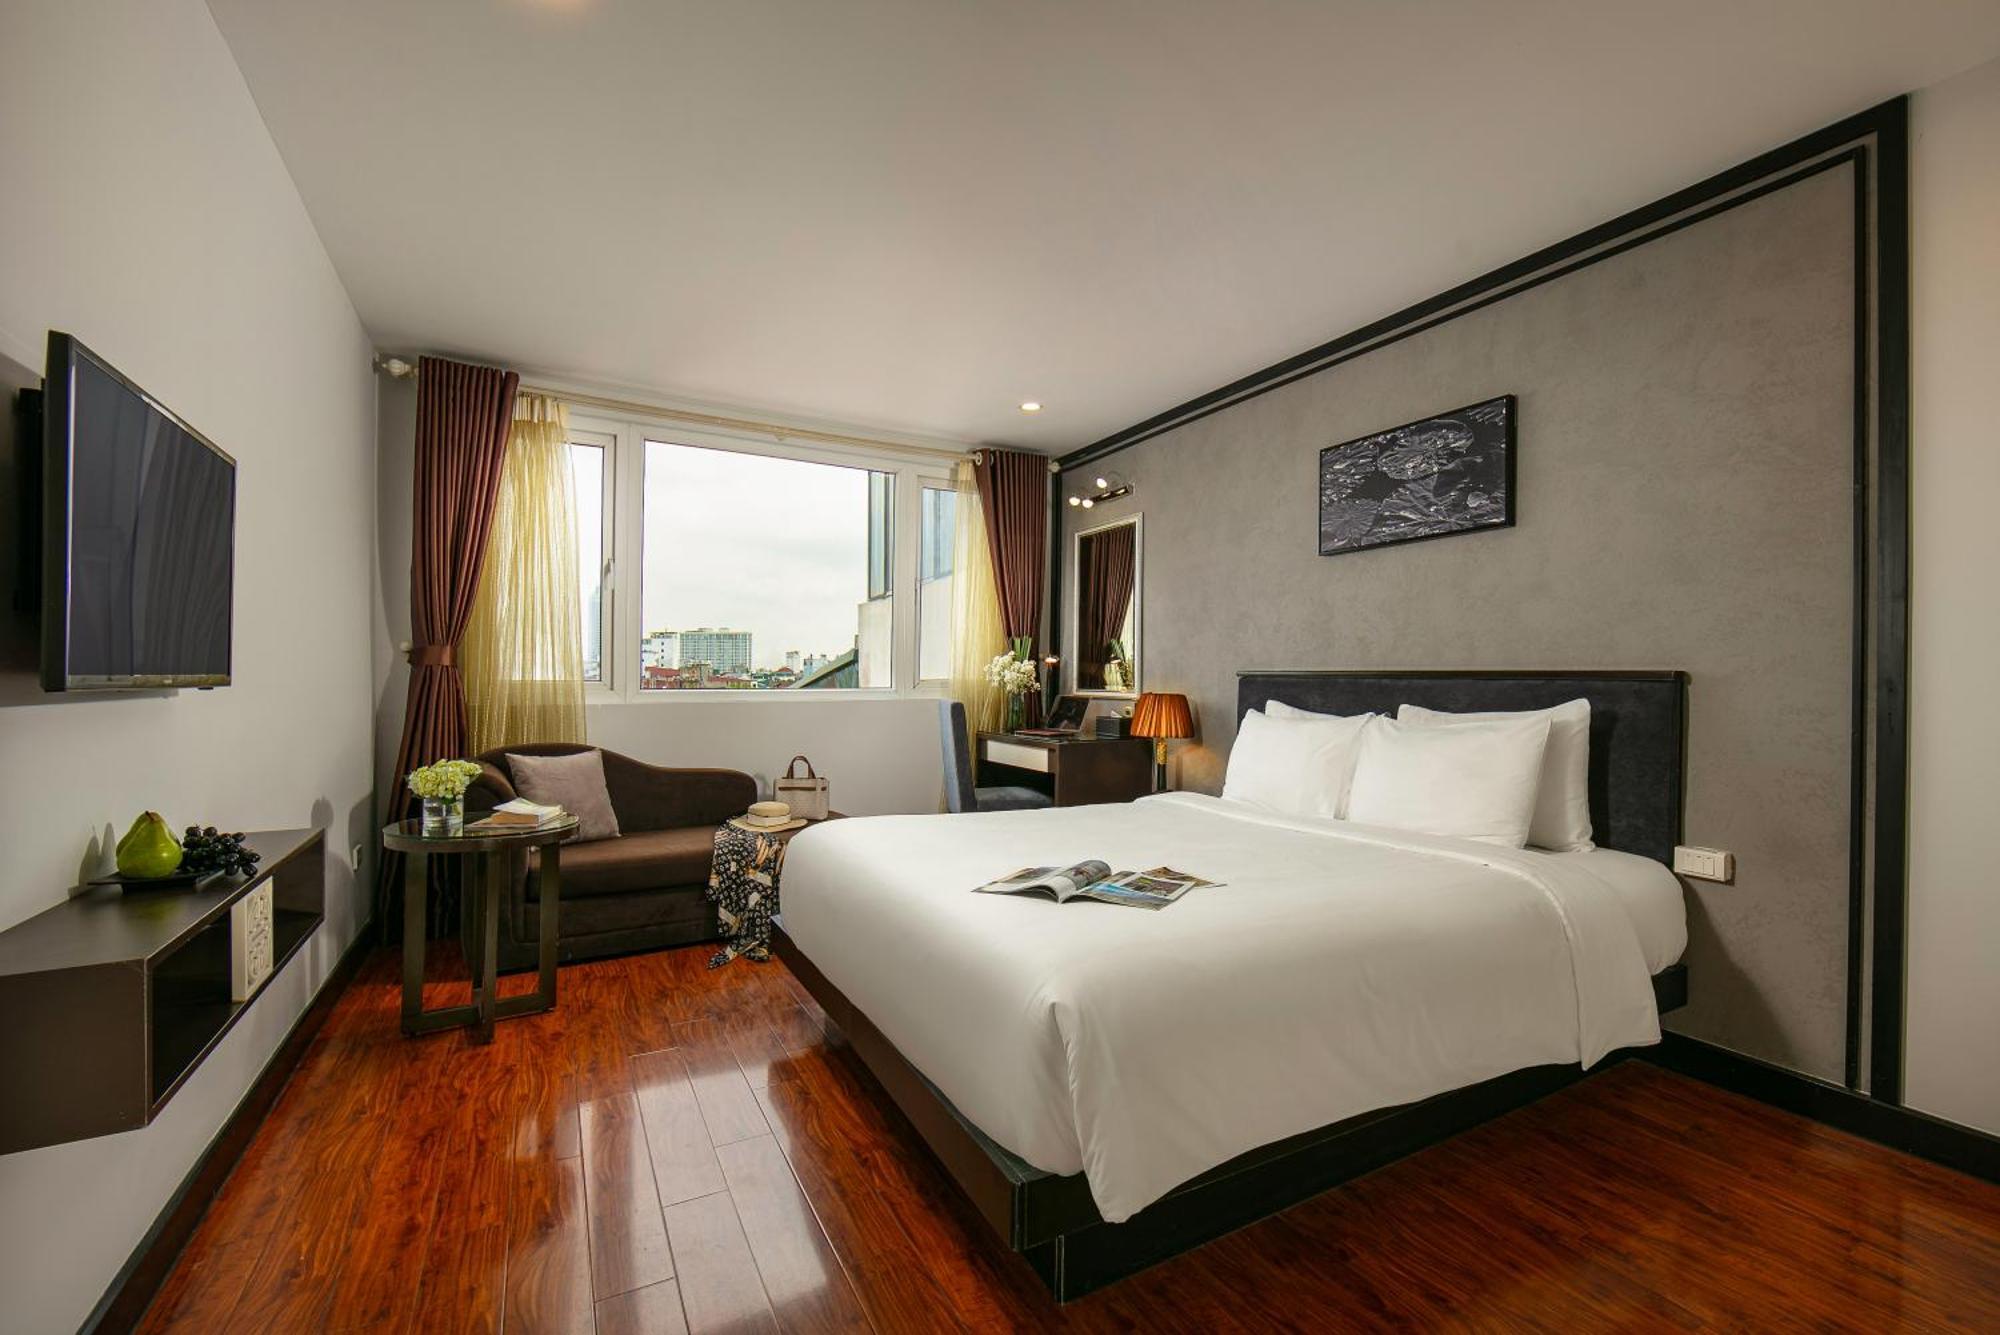 Hanoi La Palm Premier Hotel & Spa Zewnętrze zdjęcie